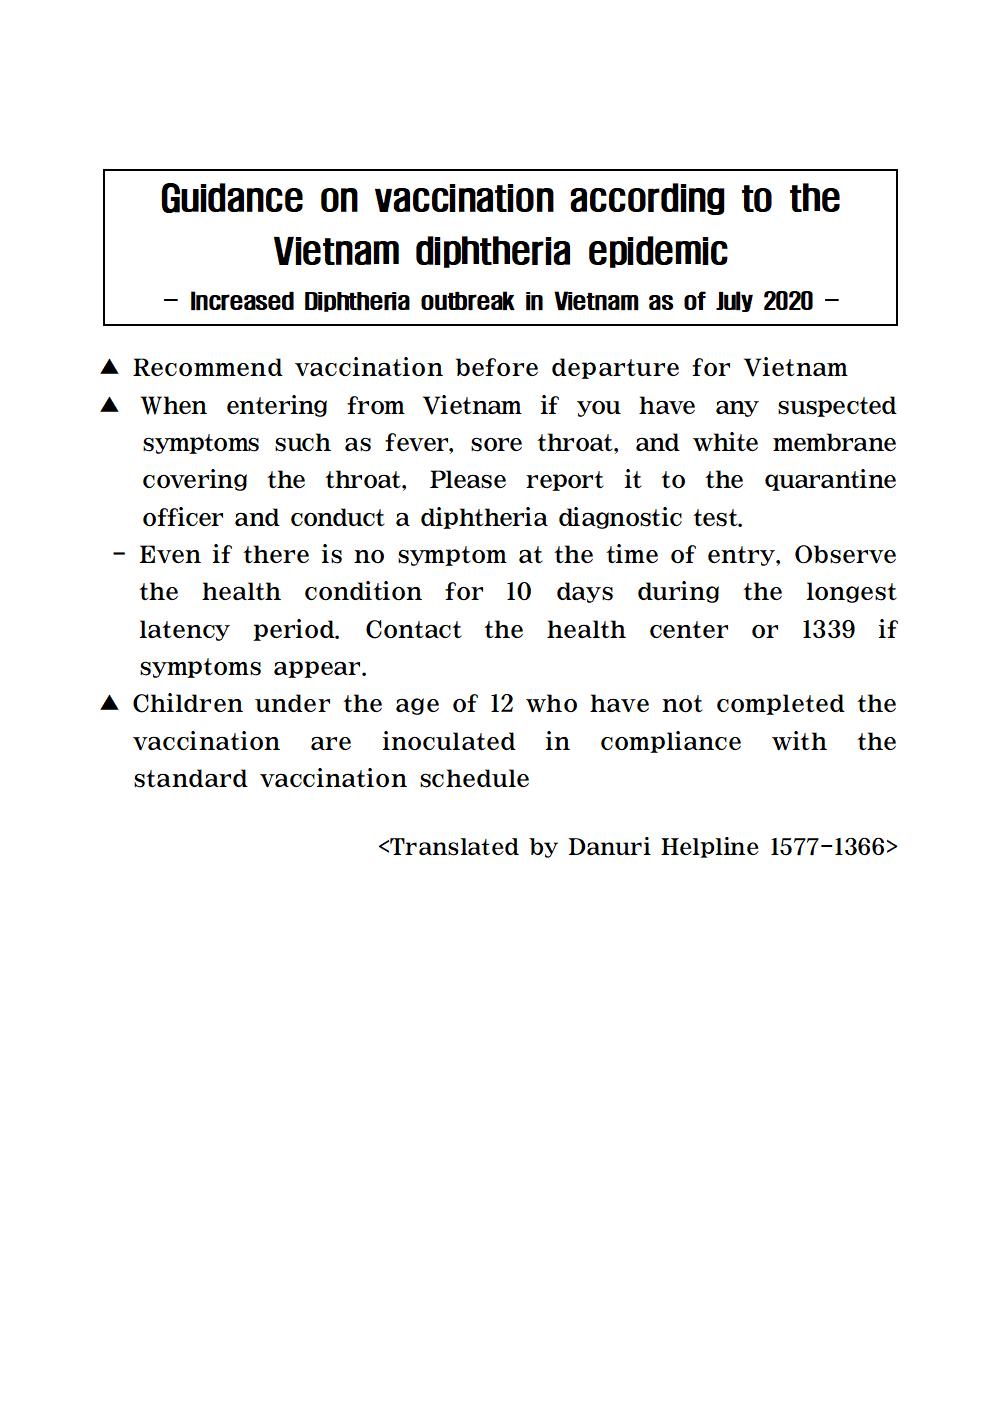 (200714) 베트남 디프테리아 발생에 따른 예방접종 등 안내_영어001